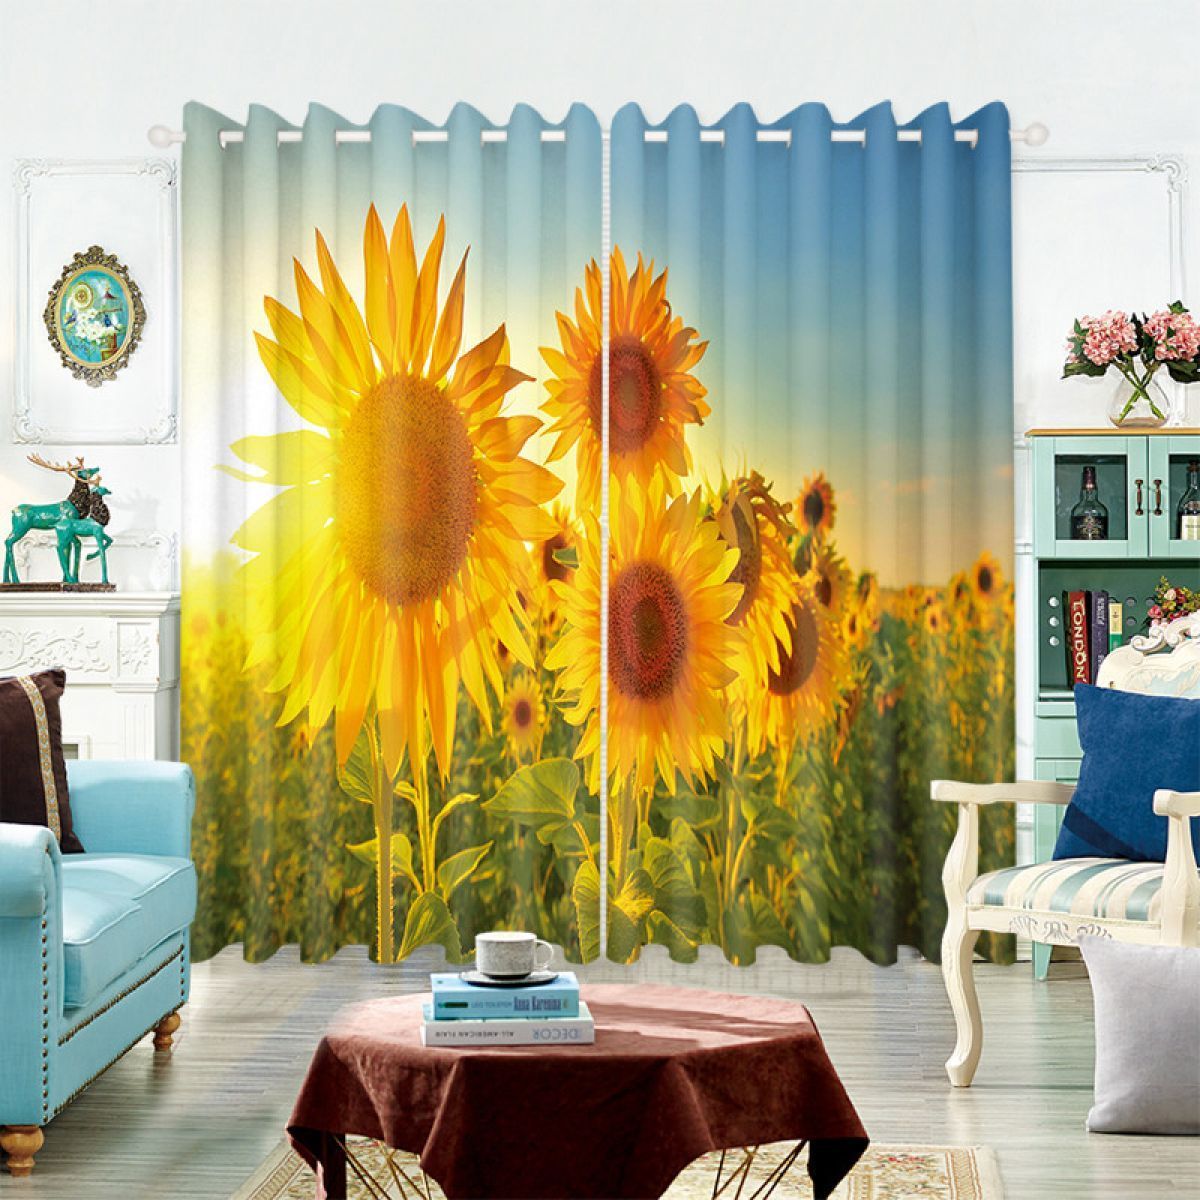 3d Sunflowers Always Follow The Sun Printed Window Curtain Home Decor